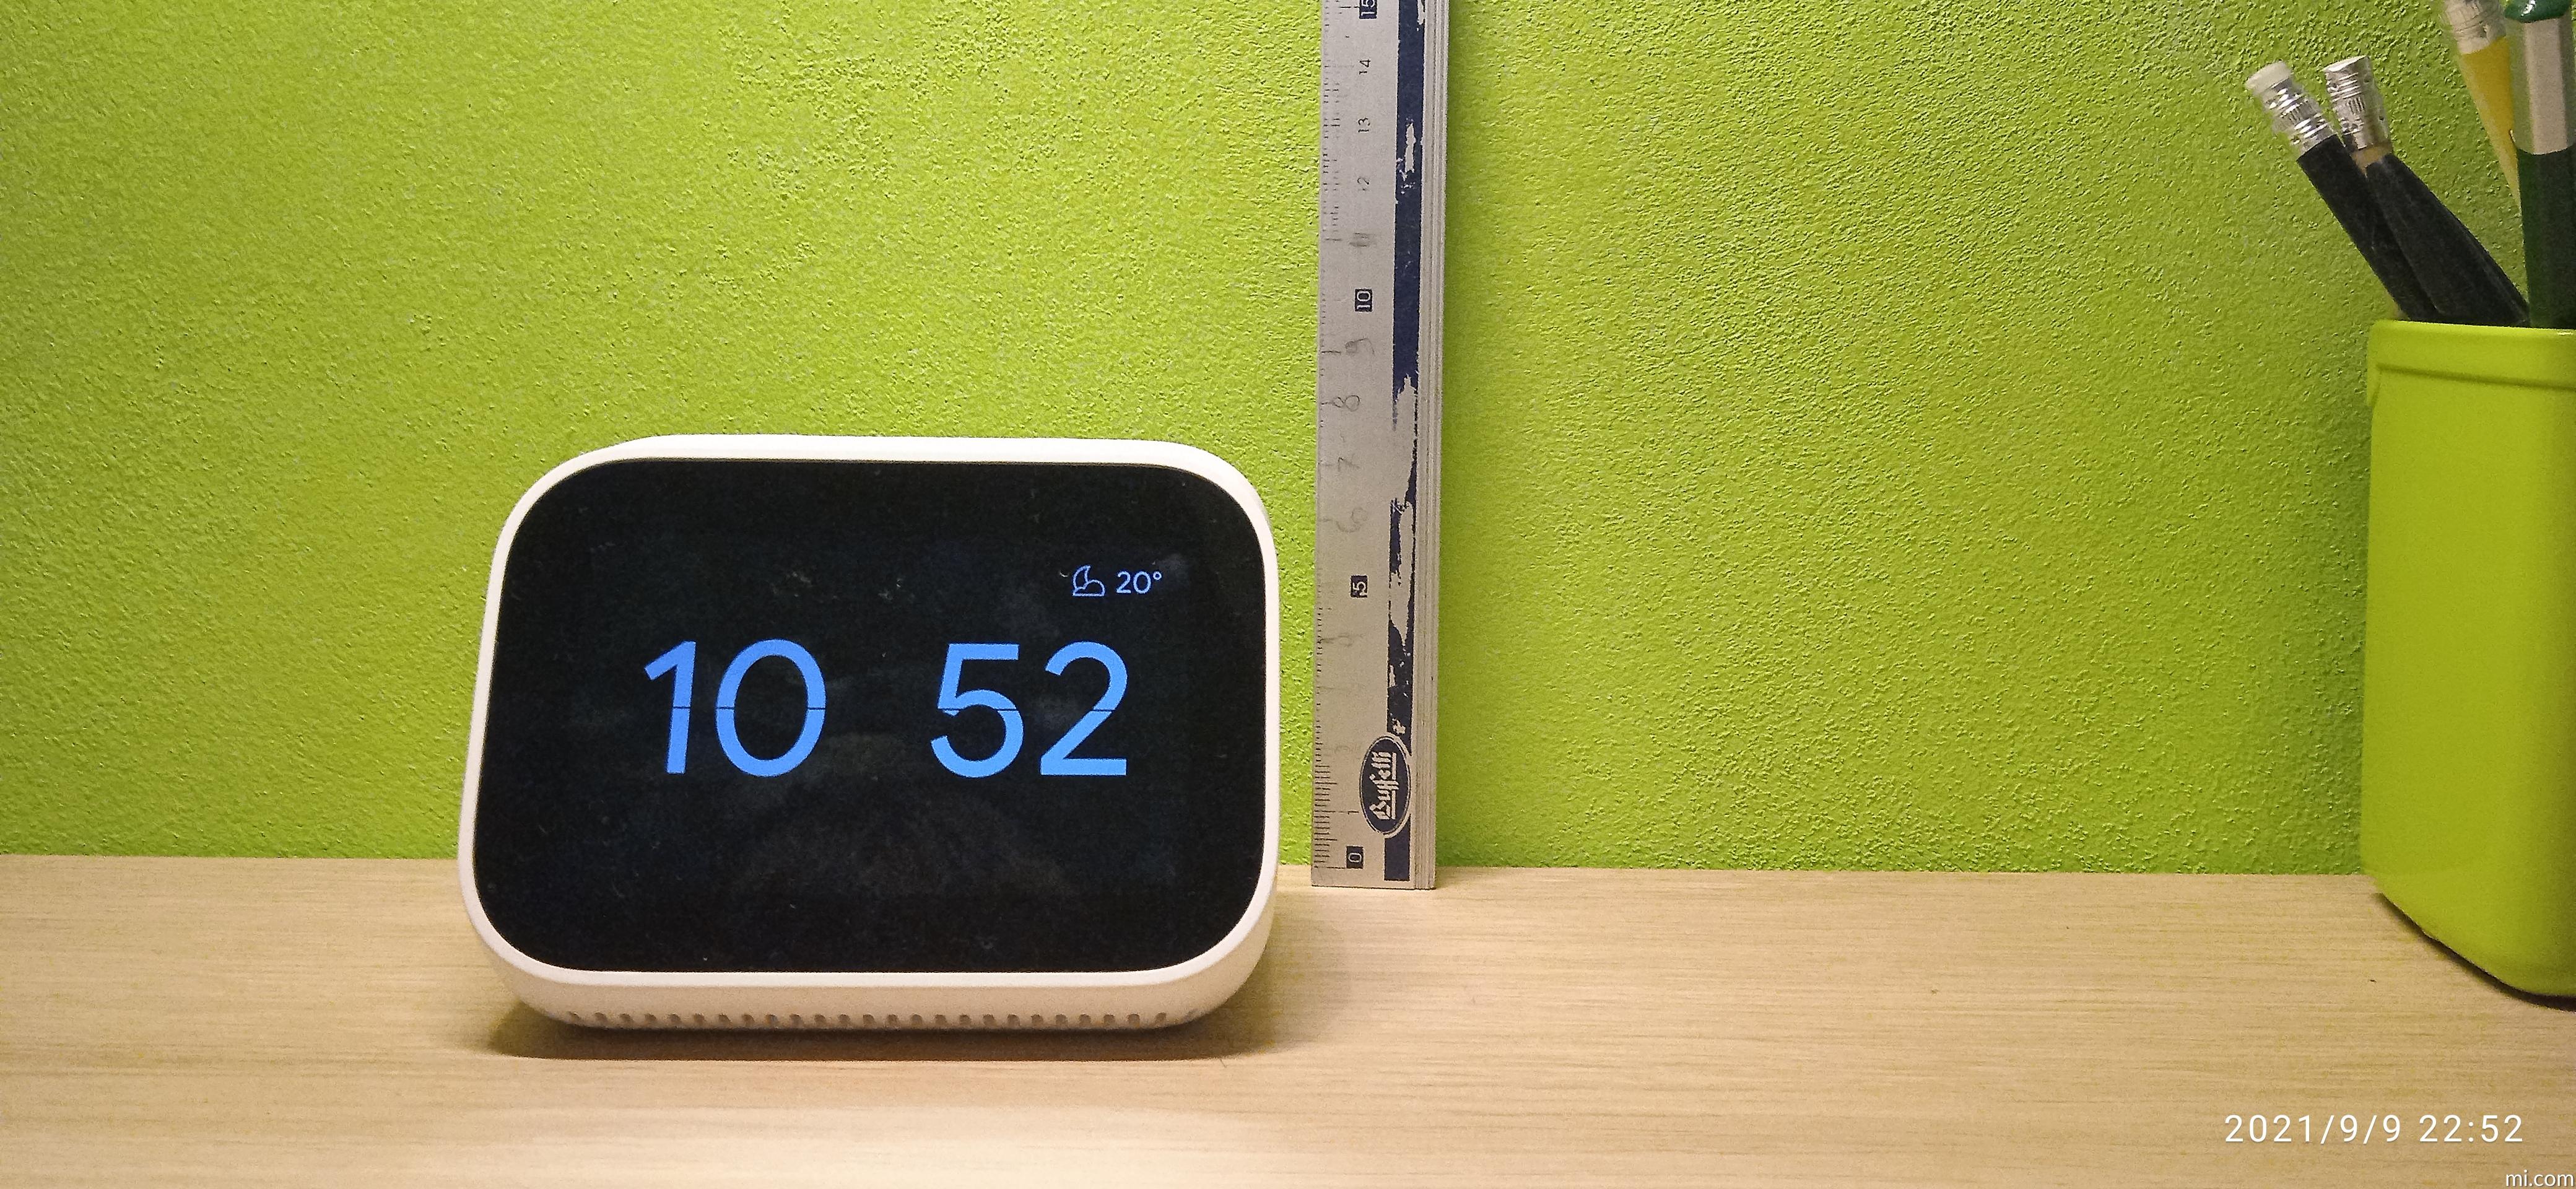 Cercate una sveglia SMART? ECCOLA! - Recensione Xiaomi Mi Smart Clock 